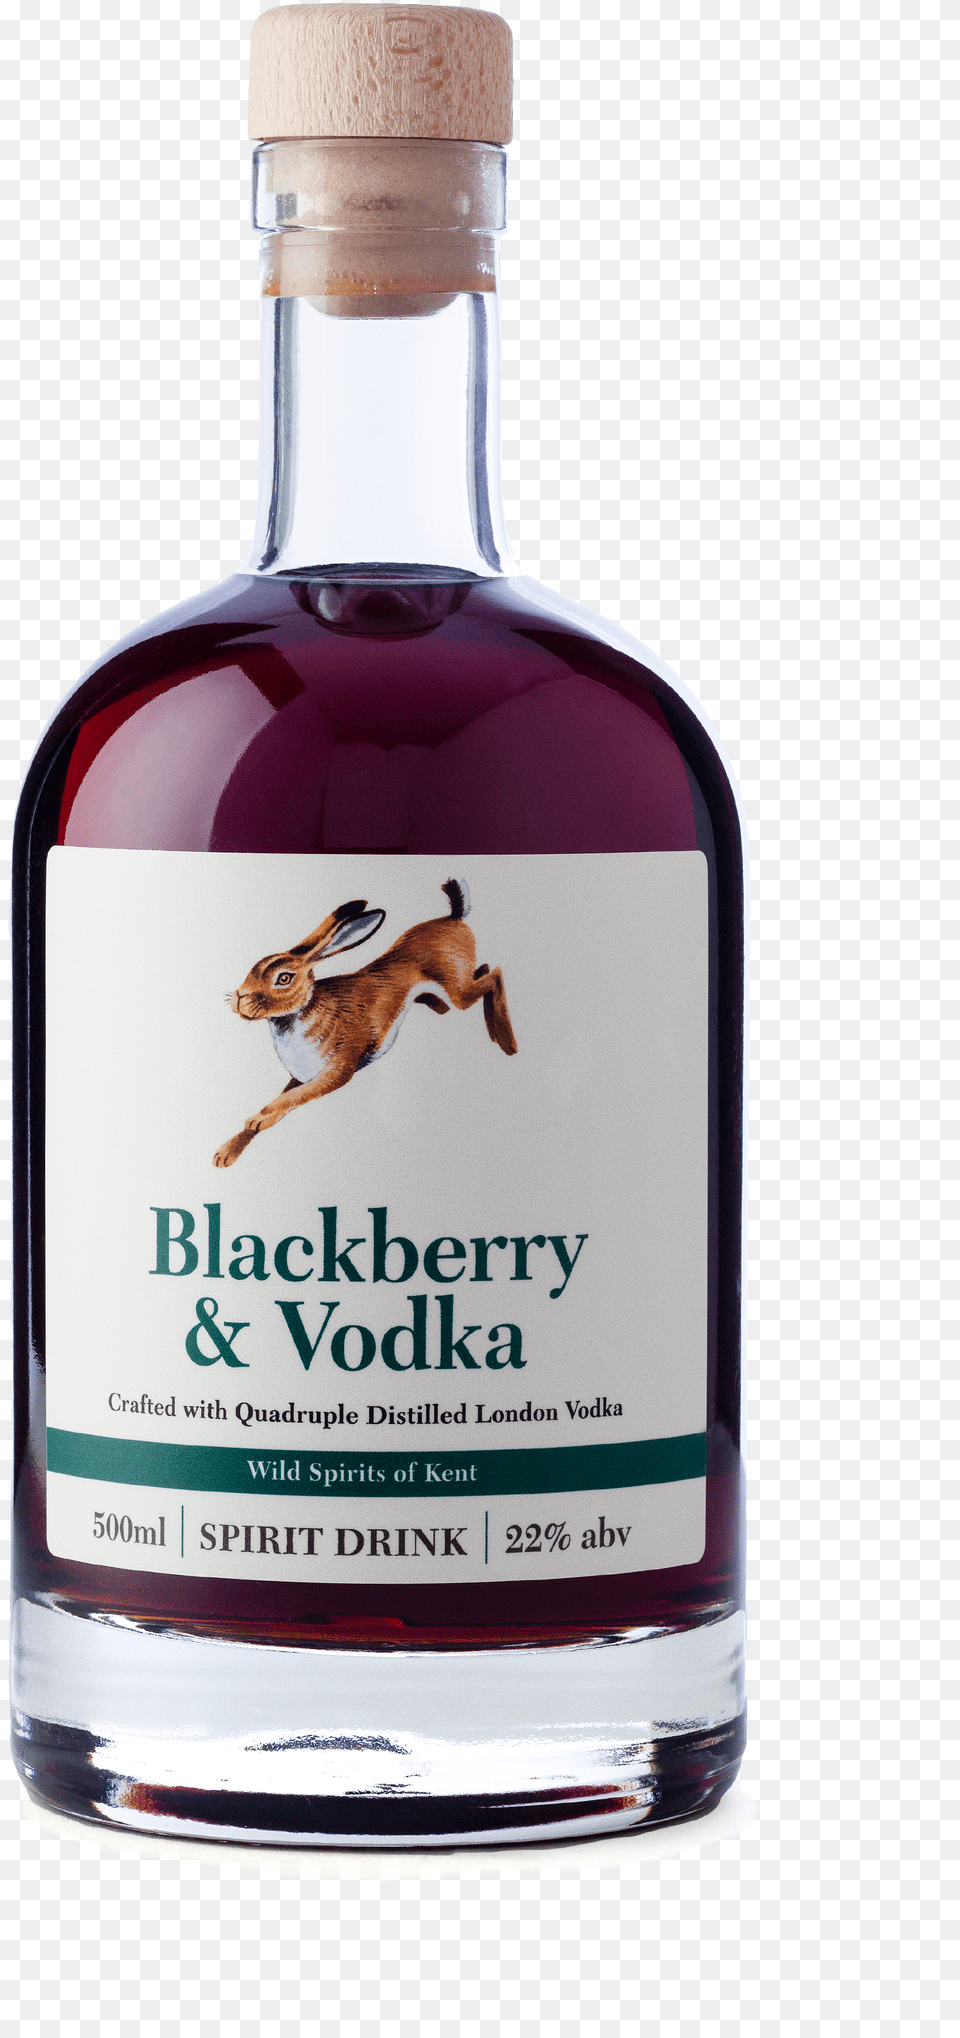 Blackberry Vodka Bottle, Alcohol, Beverage, Liquor, Gin Free Png Download